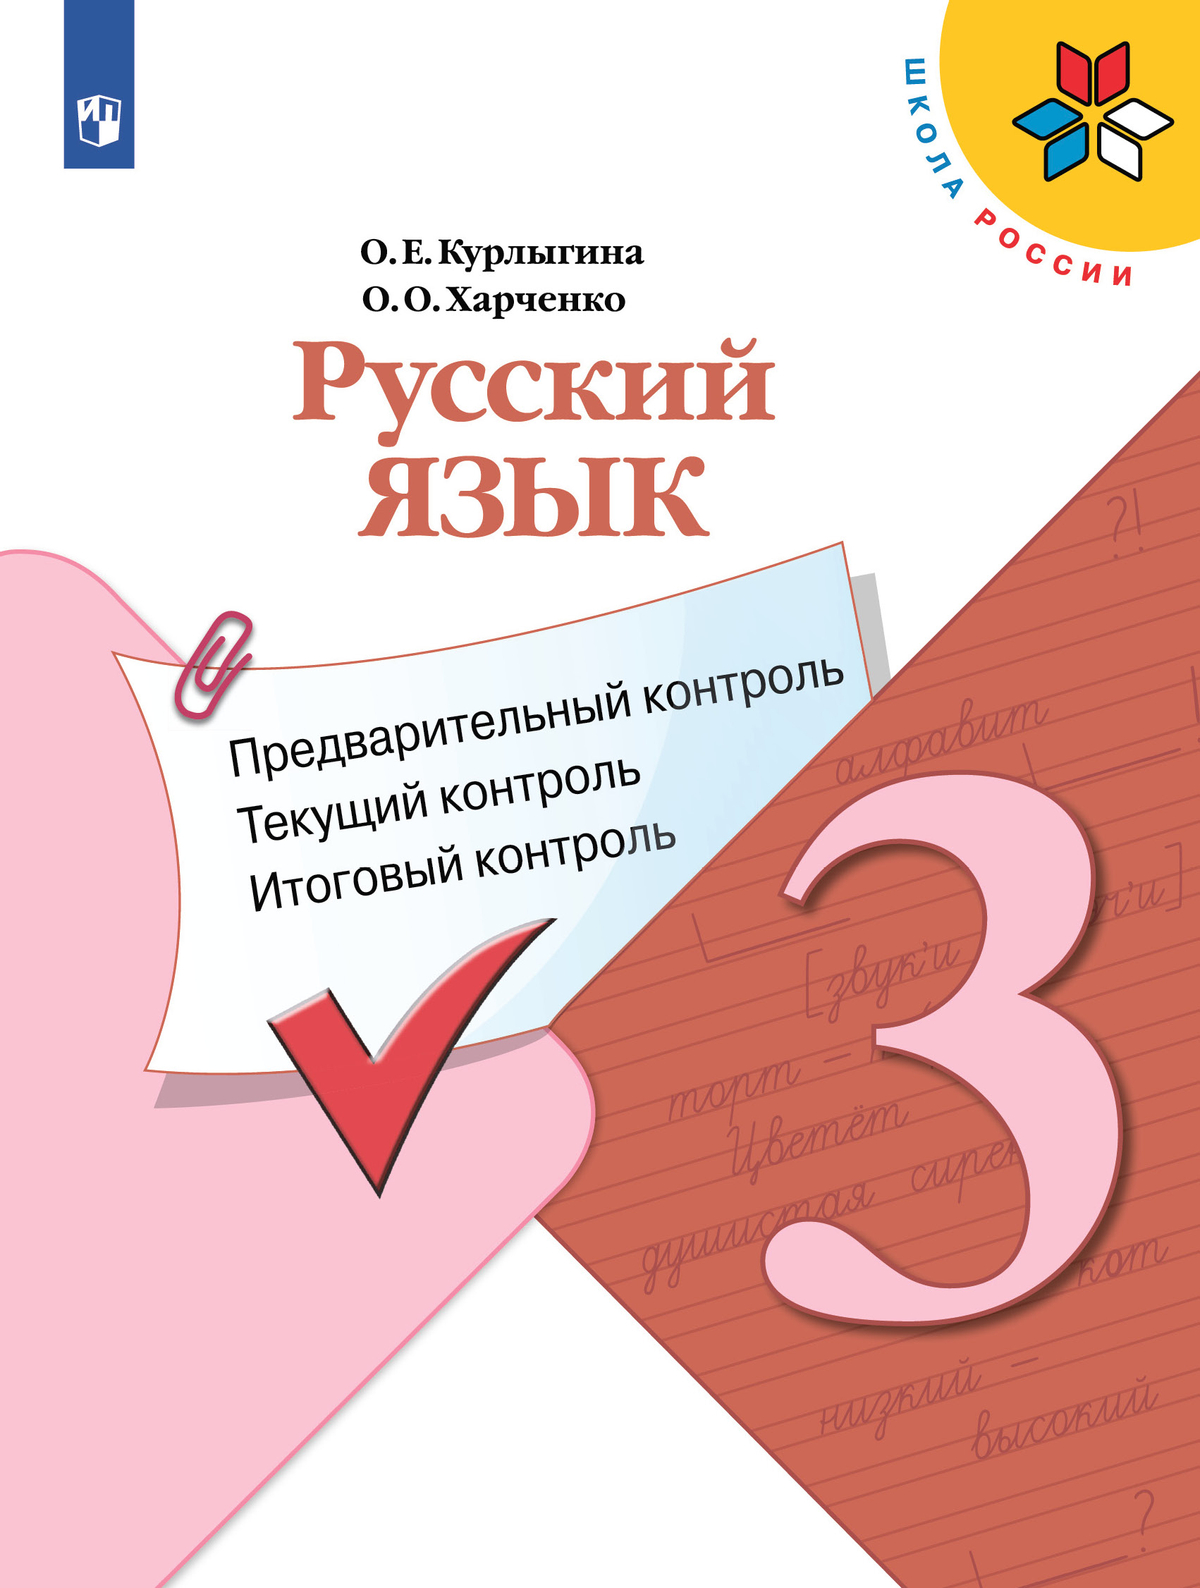 Русский язык.Предварительный контроль, текущий контроль, итоговый контроль. 3 класс 1